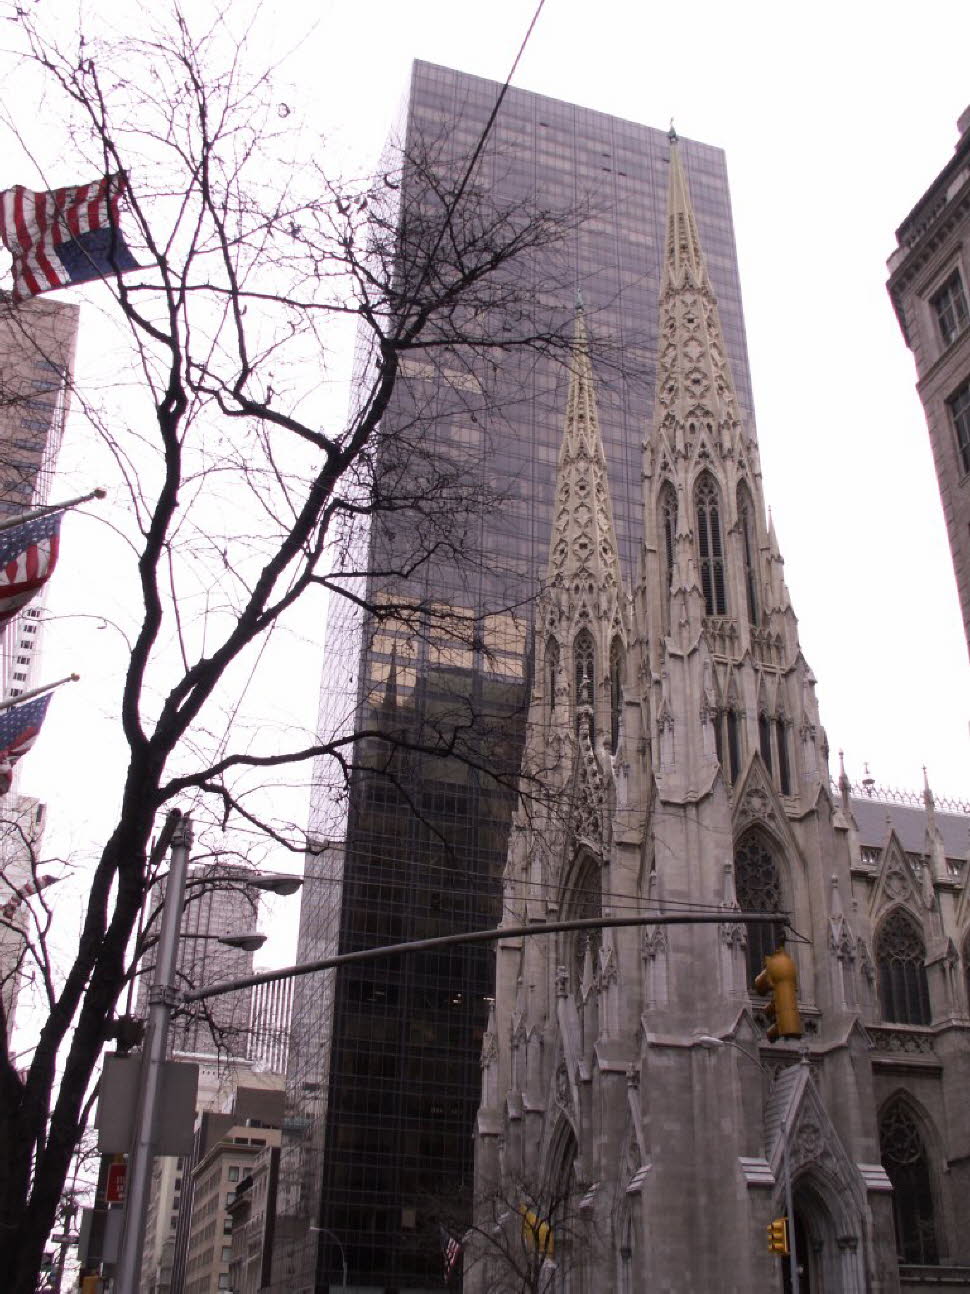 Die größte im neugotischen Stil erbaute Kathedrale in den Vereinigten Staaten ist die St. Patrick’s Cathedral. Sie befindet sich an der Fifth Avenue in Manhattan, zwischen der 50. und der 51. Straße, direkt gegenüber dem Rockefeller Center. Die Kathedrale